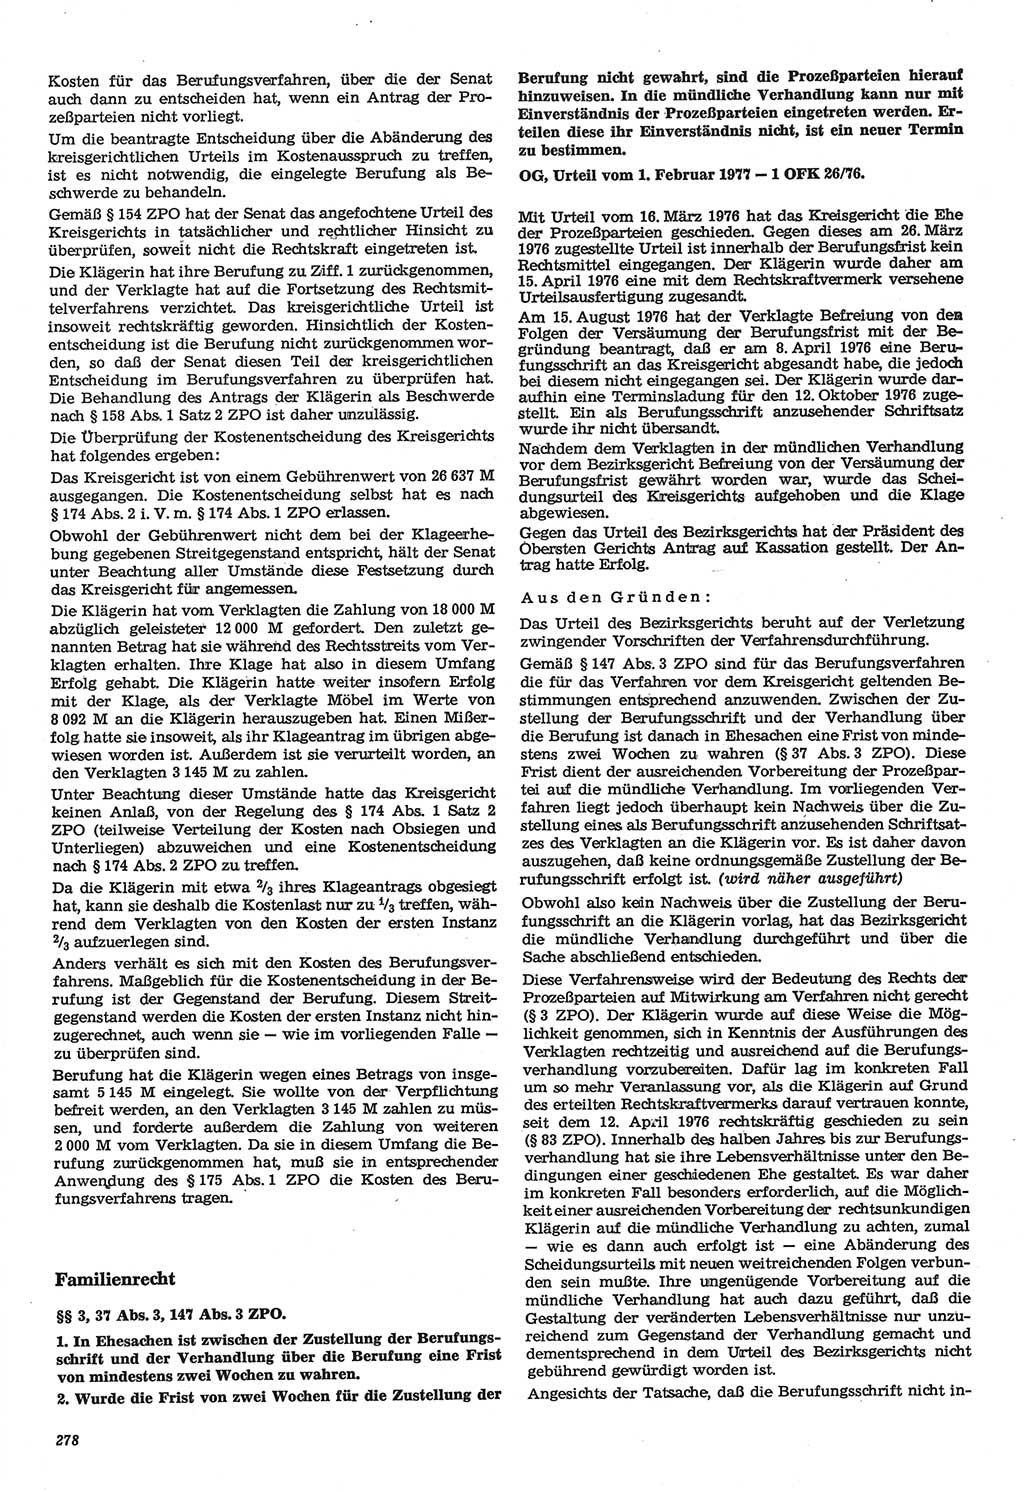 Neue Justiz (NJ), Zeitschrift für Recht und Rechtswissenschaft-Zeitschrift, sozialistisches Recht und Gesetzlichkeit, 31. Jahrgang 1977, Seite 278 (NJ DDR 1977, S. 278)